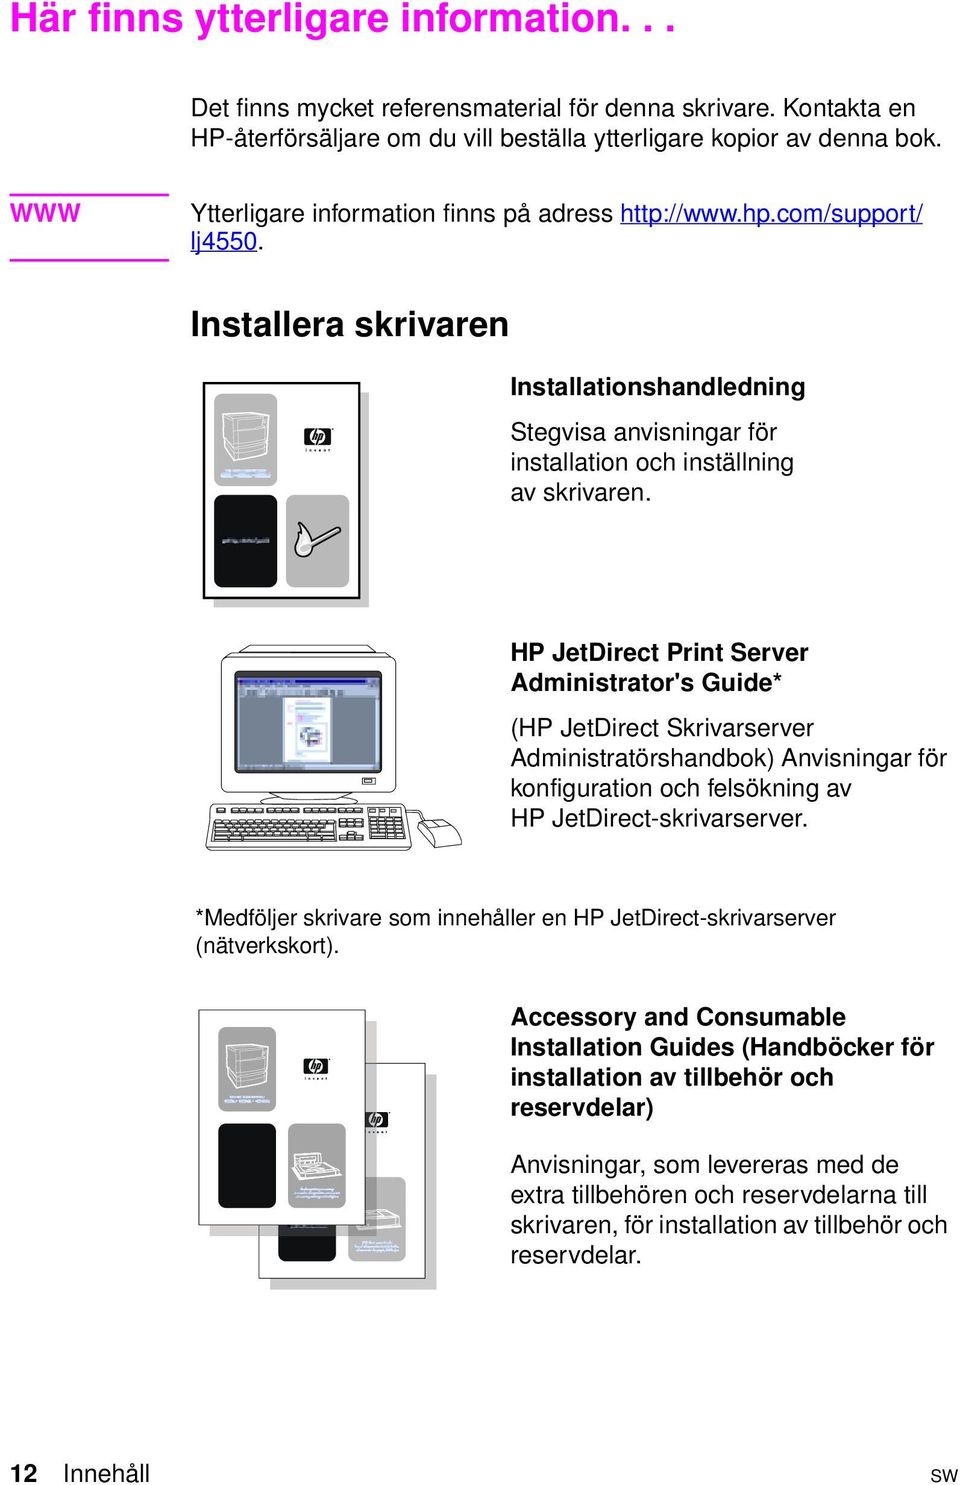 HP JetDirect Print Server Administrator's Guide* (HP JetDirect Skrivarserver Administratörshandbok) Anvisningar för konfiguration och felsökning av HP JetDirect-skrivarserver.